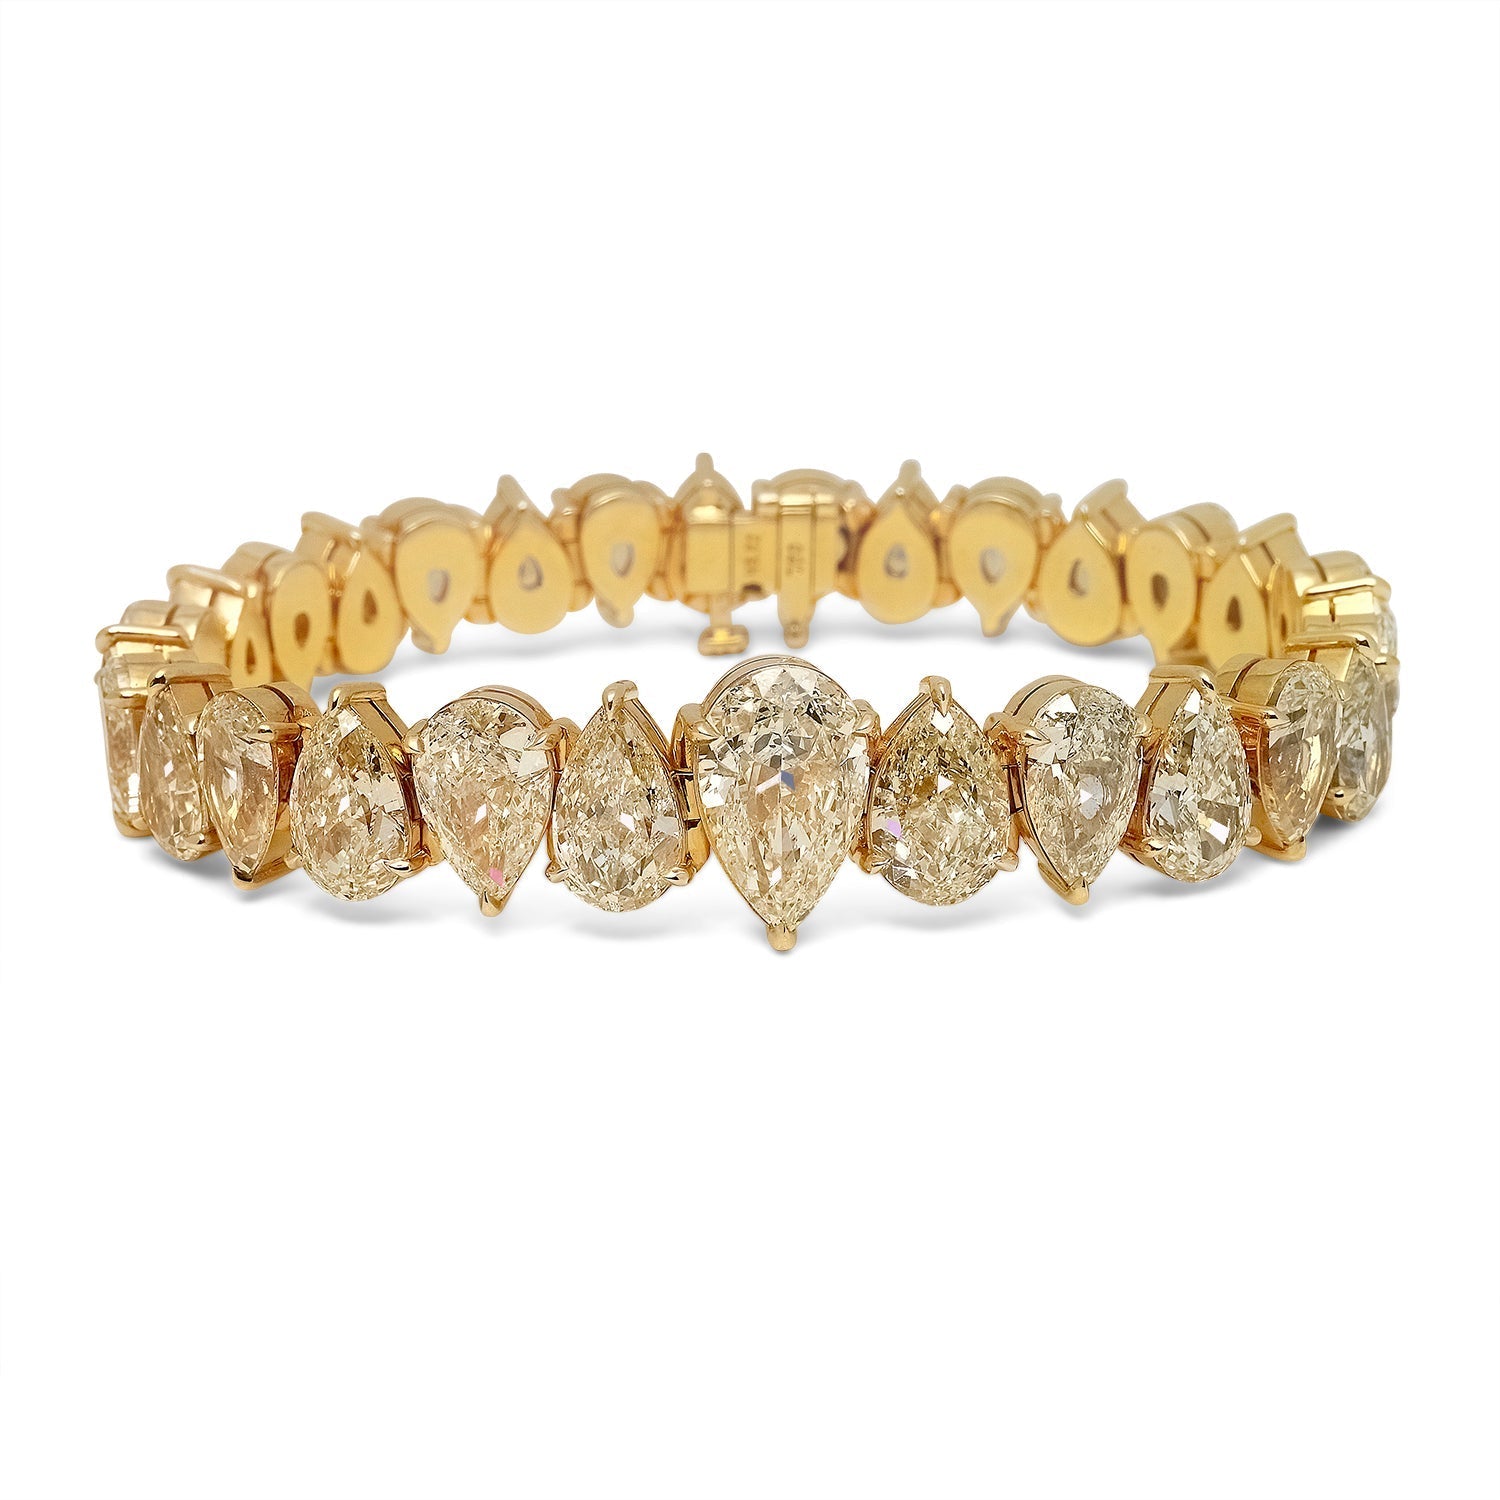 2.00 CT. T.W. Diamond Tennis Bracelet in 10K Gold | Peoples Jewellers